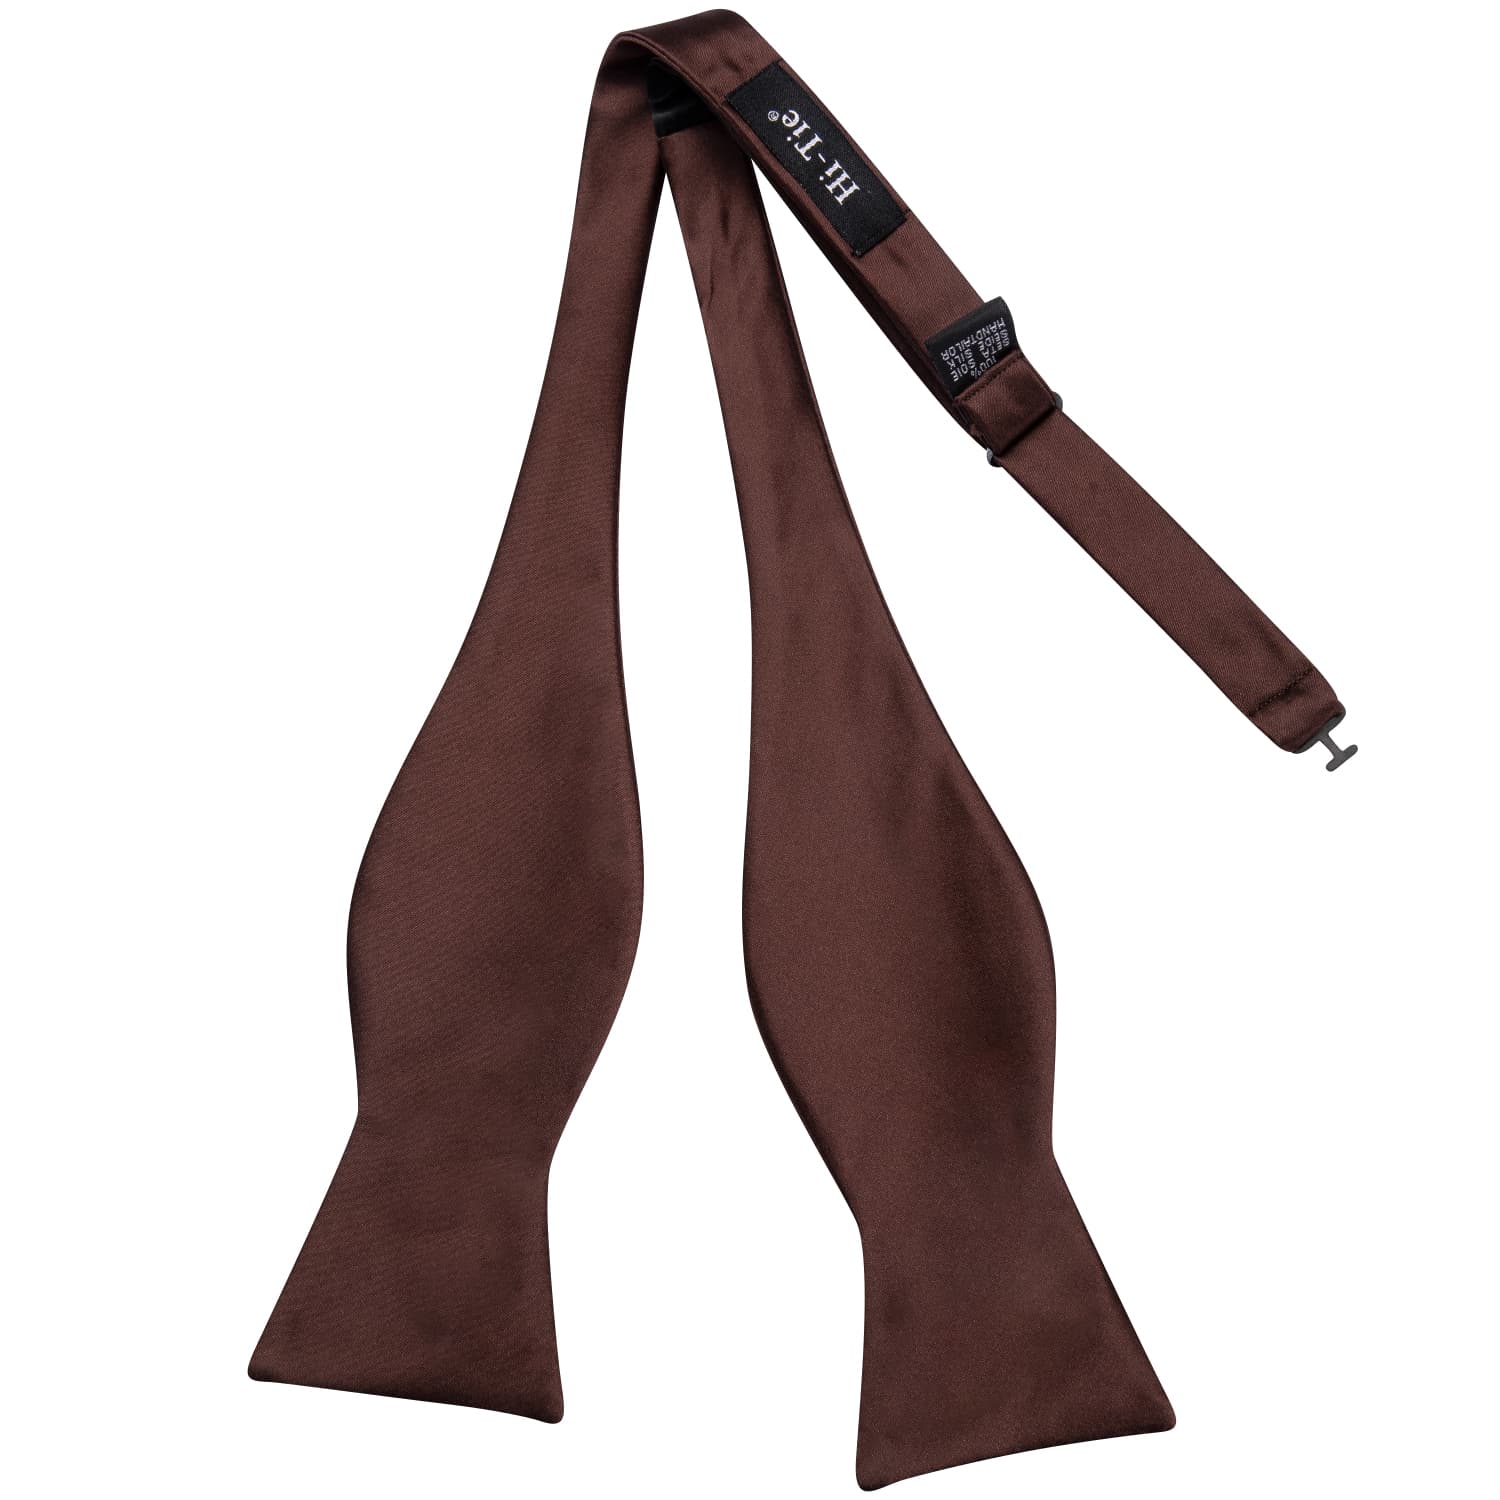 brown wool bow tie